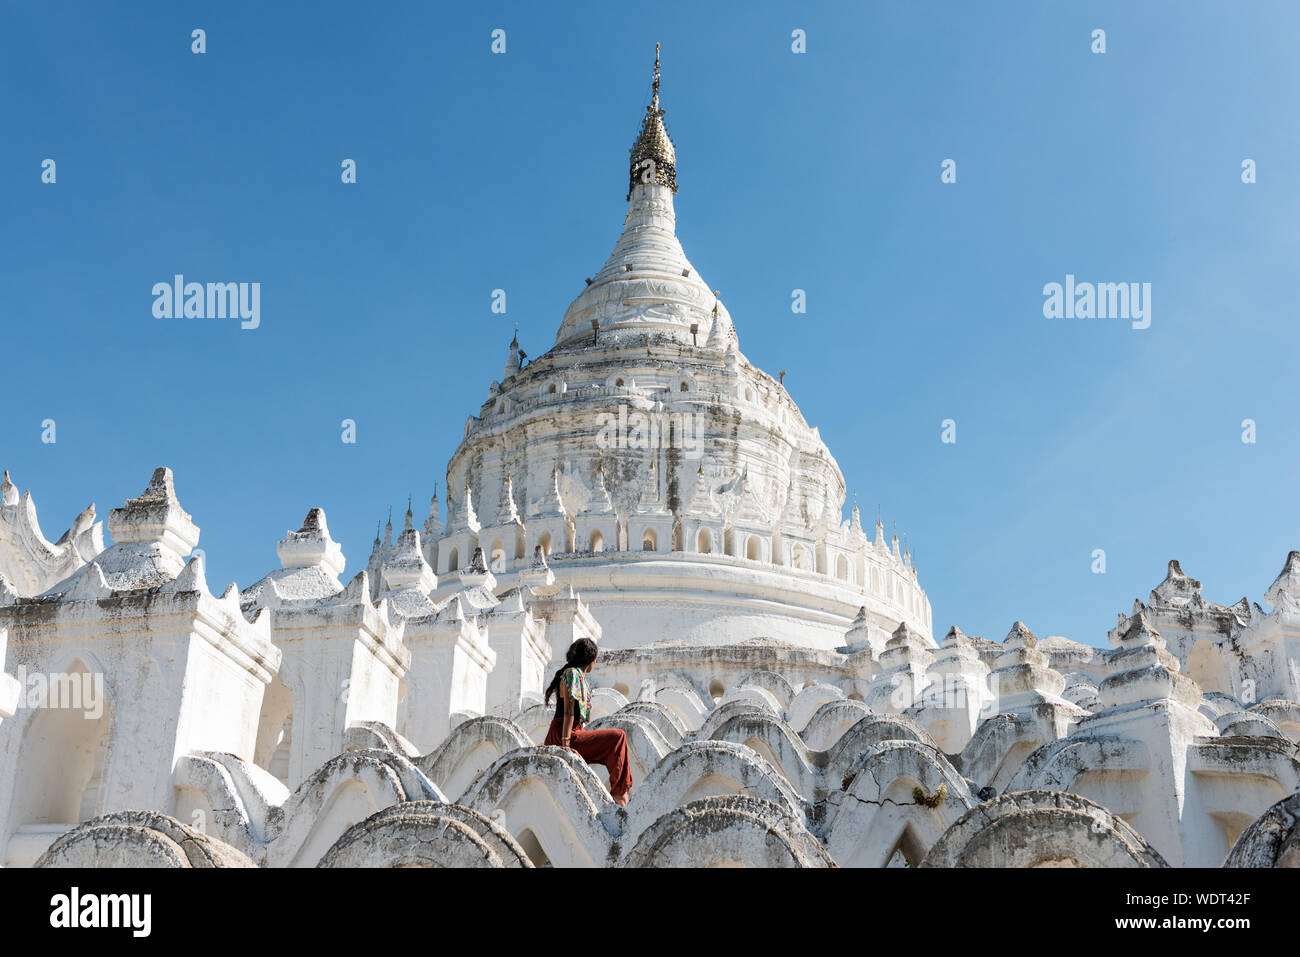 Photo grand angle de jeunes à la Pagode Hsinbyume touristiques, un célèbre temple bouddhique peint en blanc, monument du Myanmar, situé à proximité de Mandalay Banque D'Images